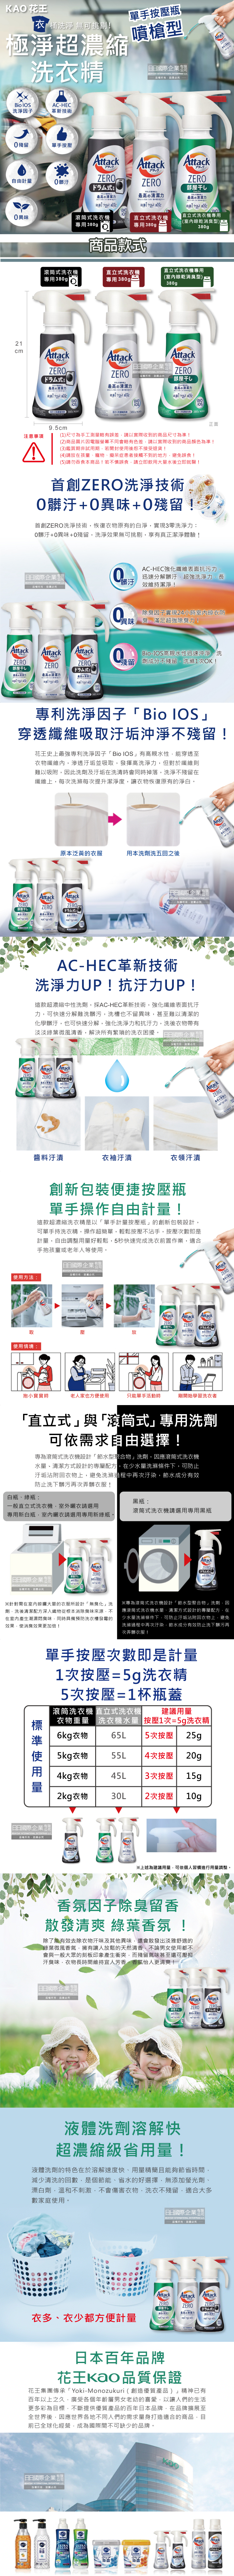 (清潔-衣物)日本KAO花王-Attack-ZERO洗衣精噴瓶380g(3款)介紹圖1-4